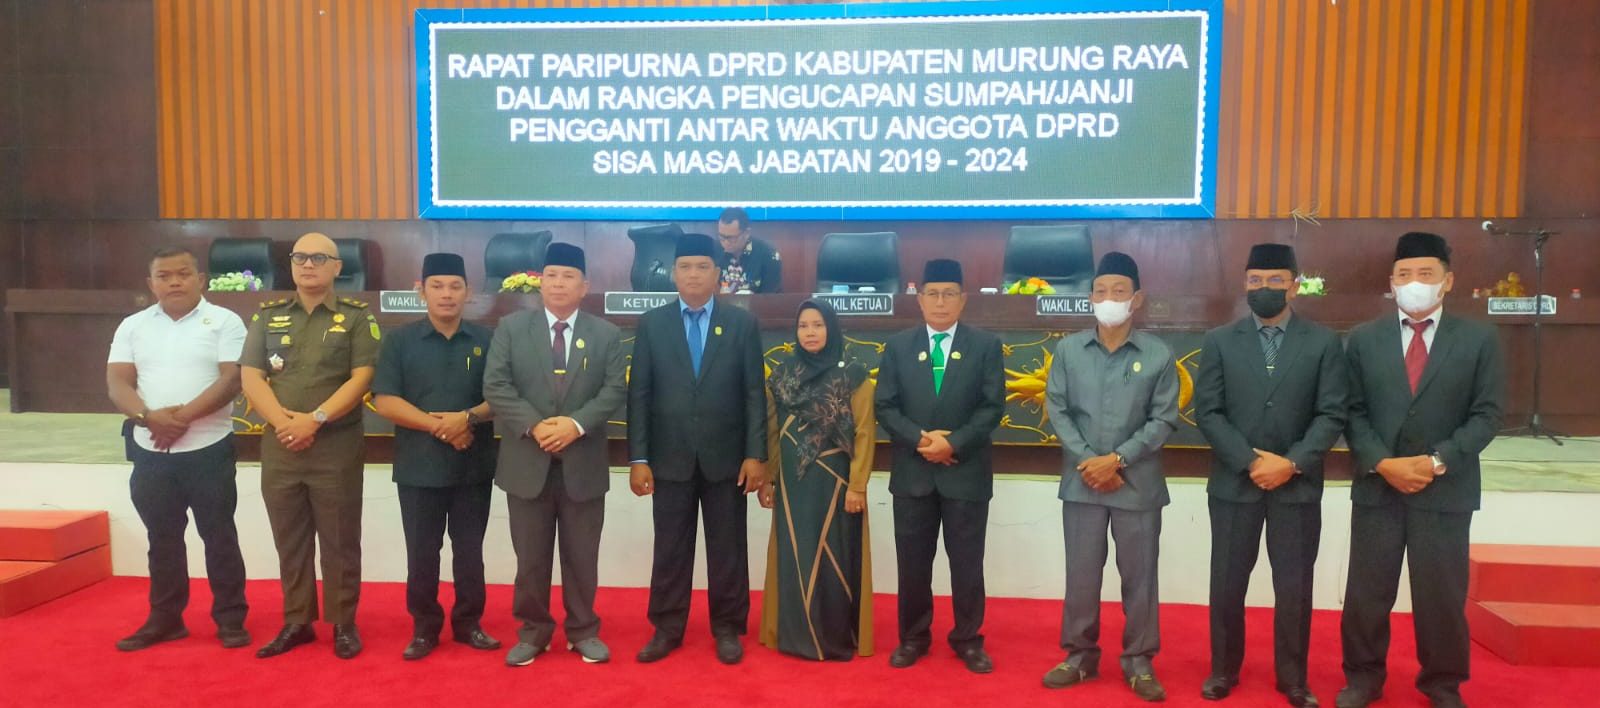 DPRD Mura Laksanakan Agenda Pengucapan Sumpah/Janji PAW Anggota DPRD Mura